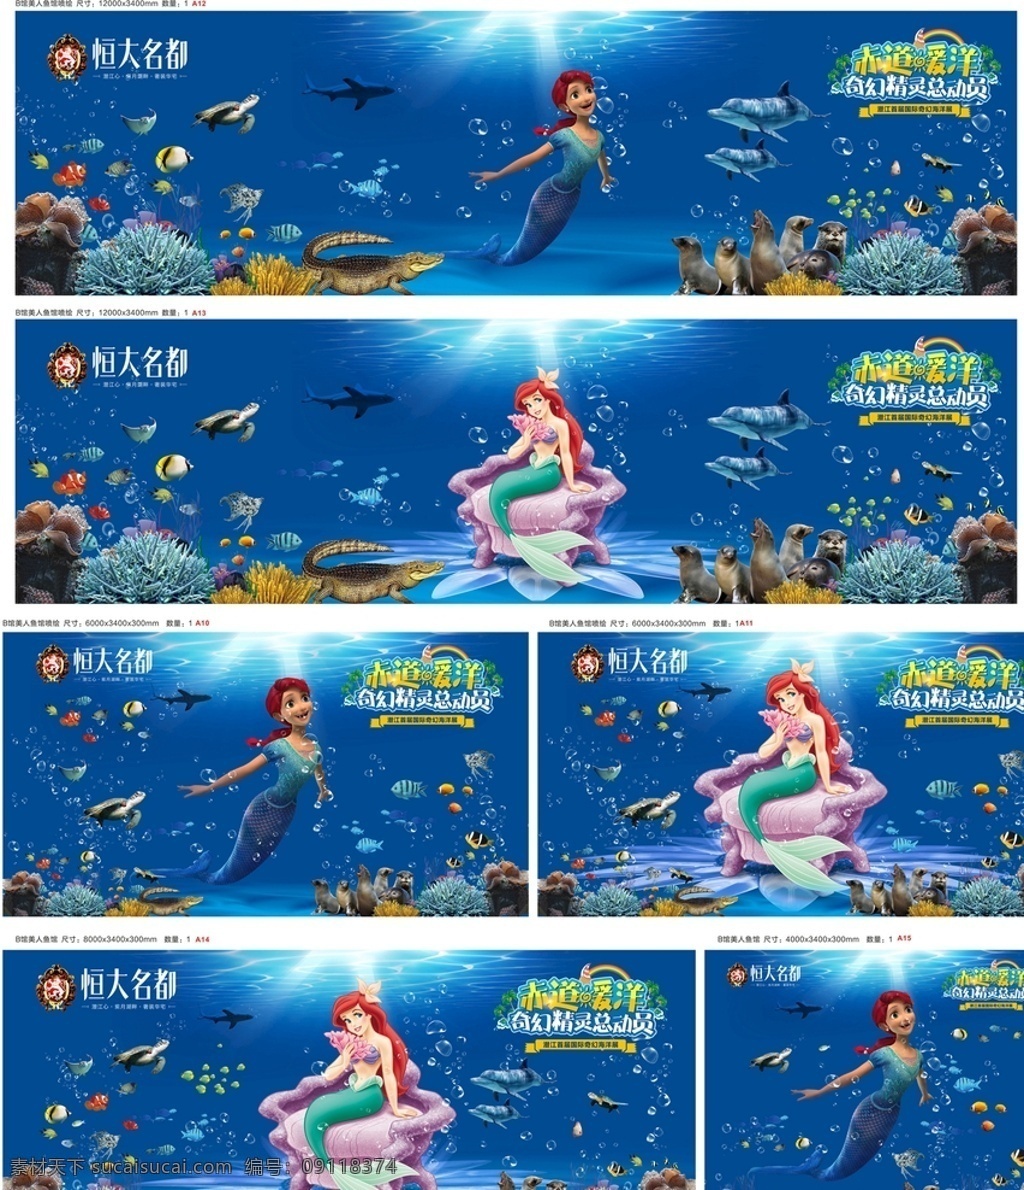 海洋 展 美人鱼 馆 画面 海洋展 布场 海狮 鄂鱼 海底 珊瑚 表演 海龟 鲨鱼 鱼群 水纹 水母